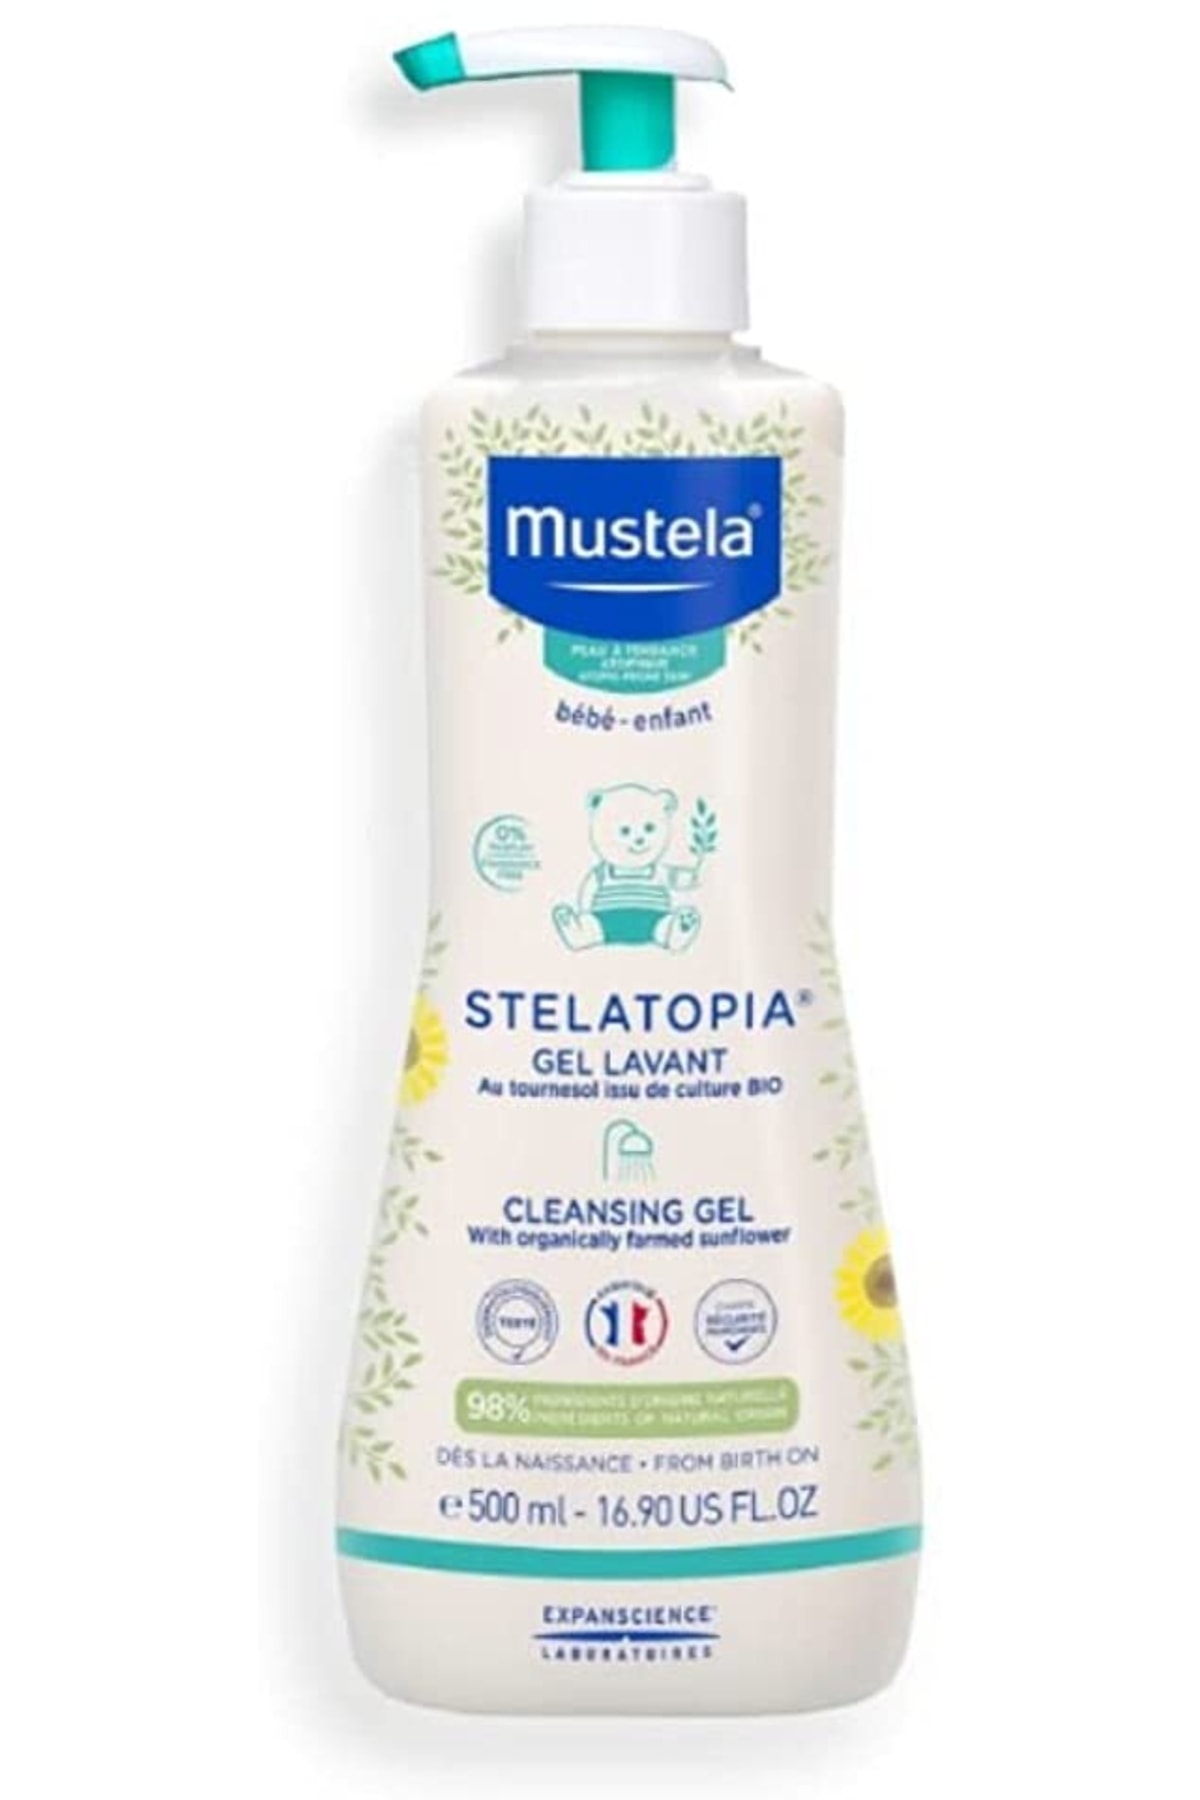 Xnews Mustela Mustela Stelatopia Gel Lavant Cleansing Gel 500ml 1 Paket